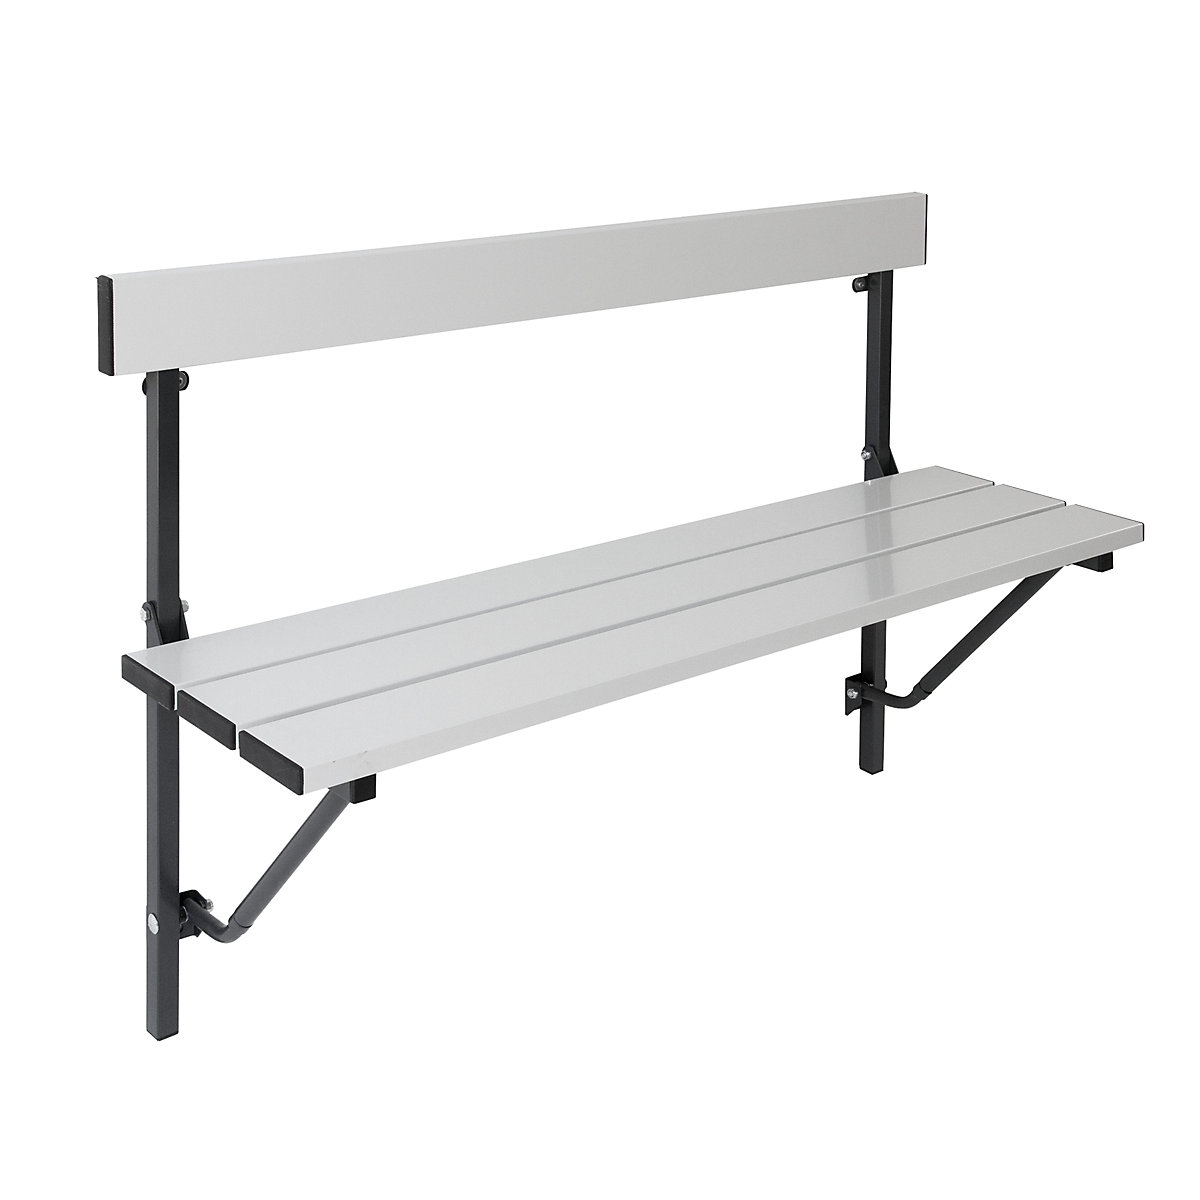 Folding wall-mounted bench – Sypro, folding, fixed length 1200 mm, with aluminium slats-2